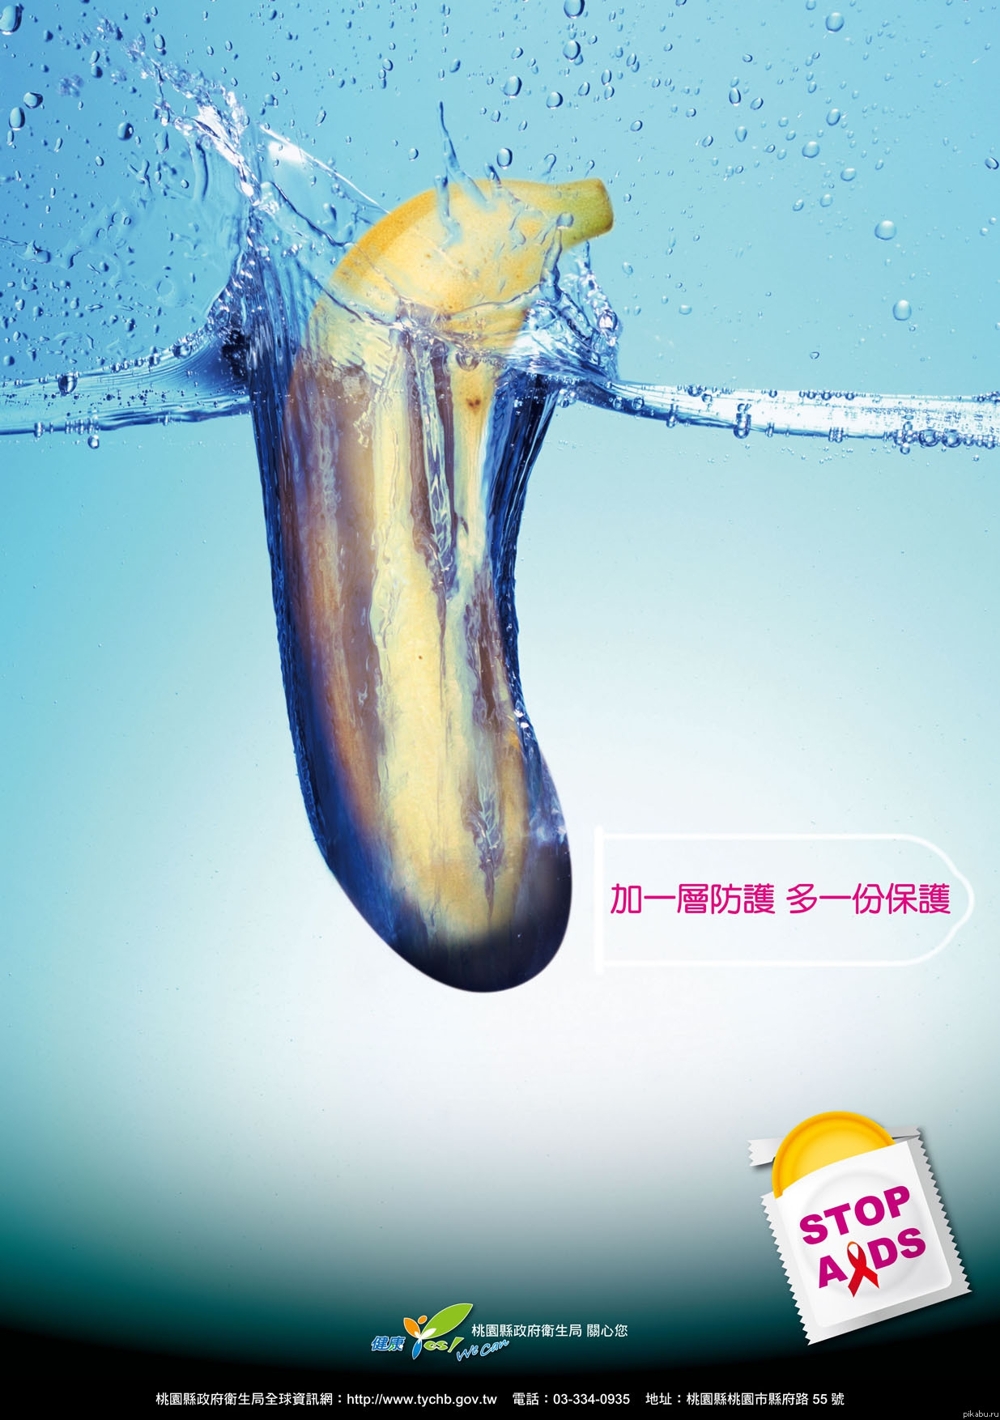 Прикольная реклама презервативов в фотографиях